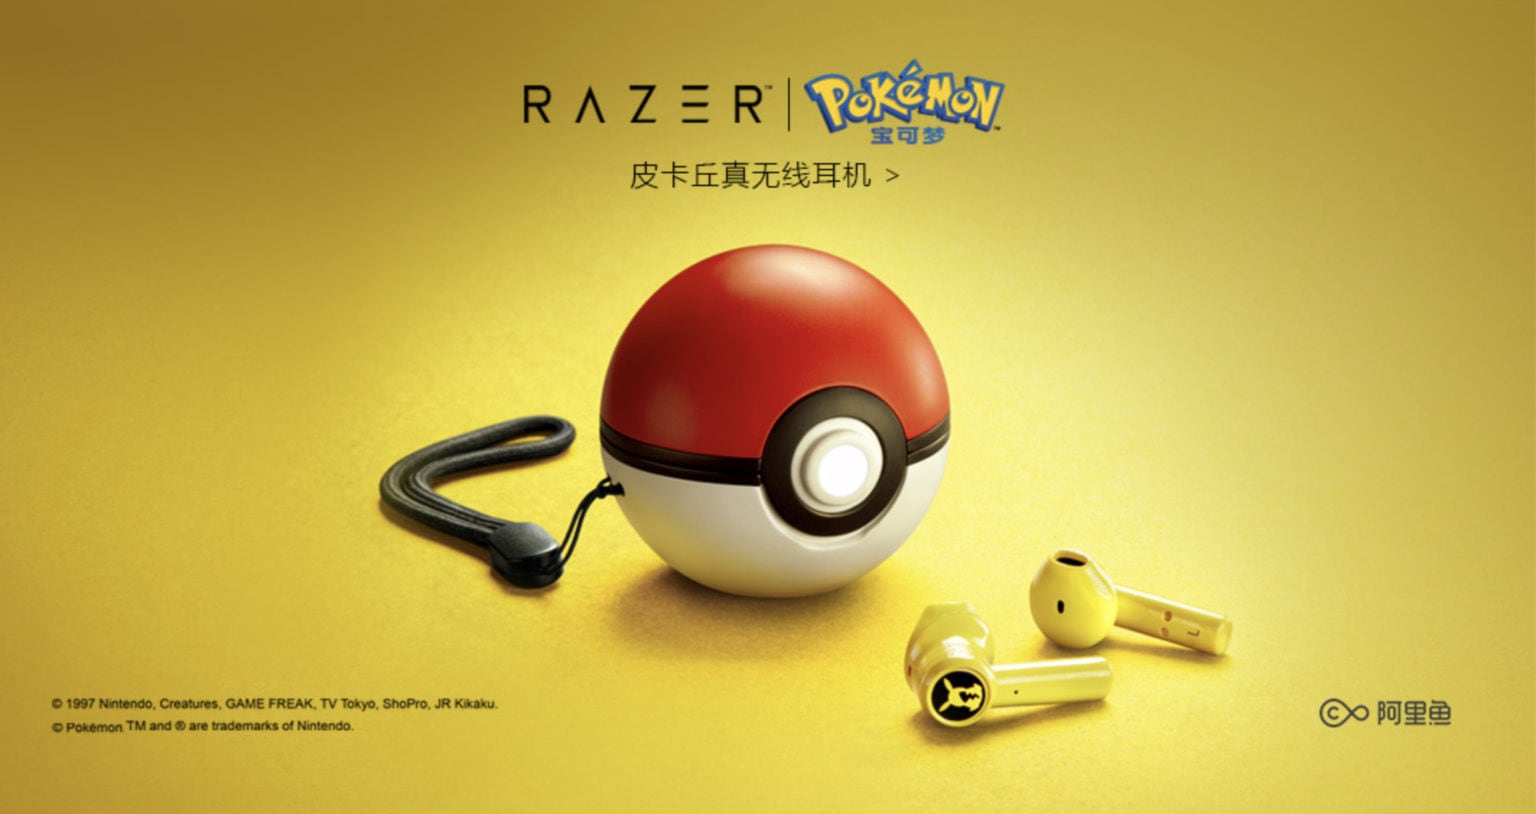 Razer-Pokemon-earbuds